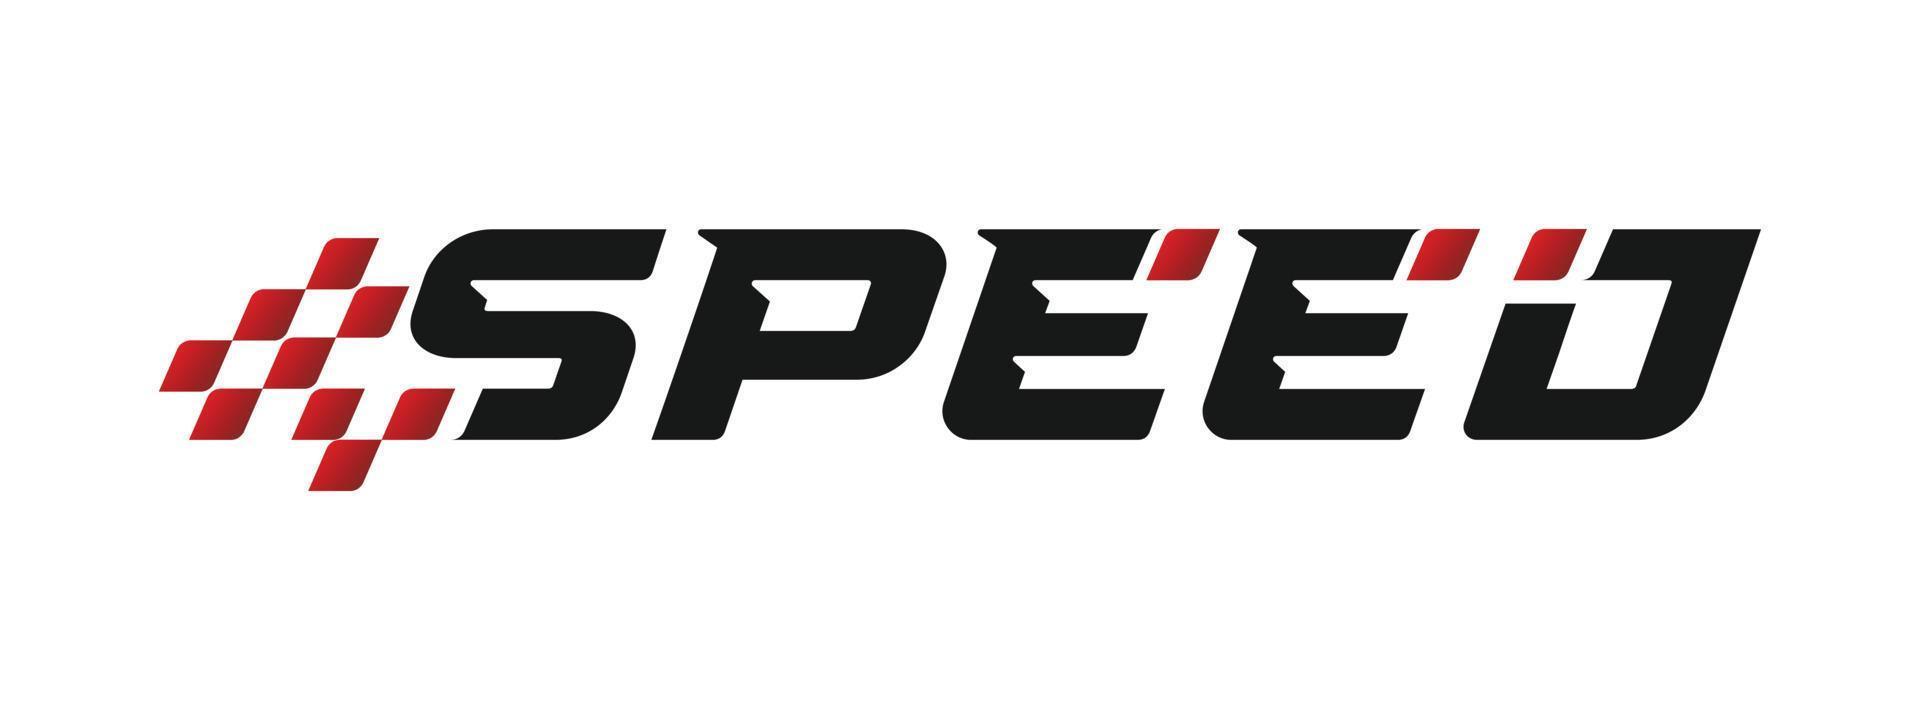 Geschwindigkeit Logo Design, zum Rennen und Automobil vektor